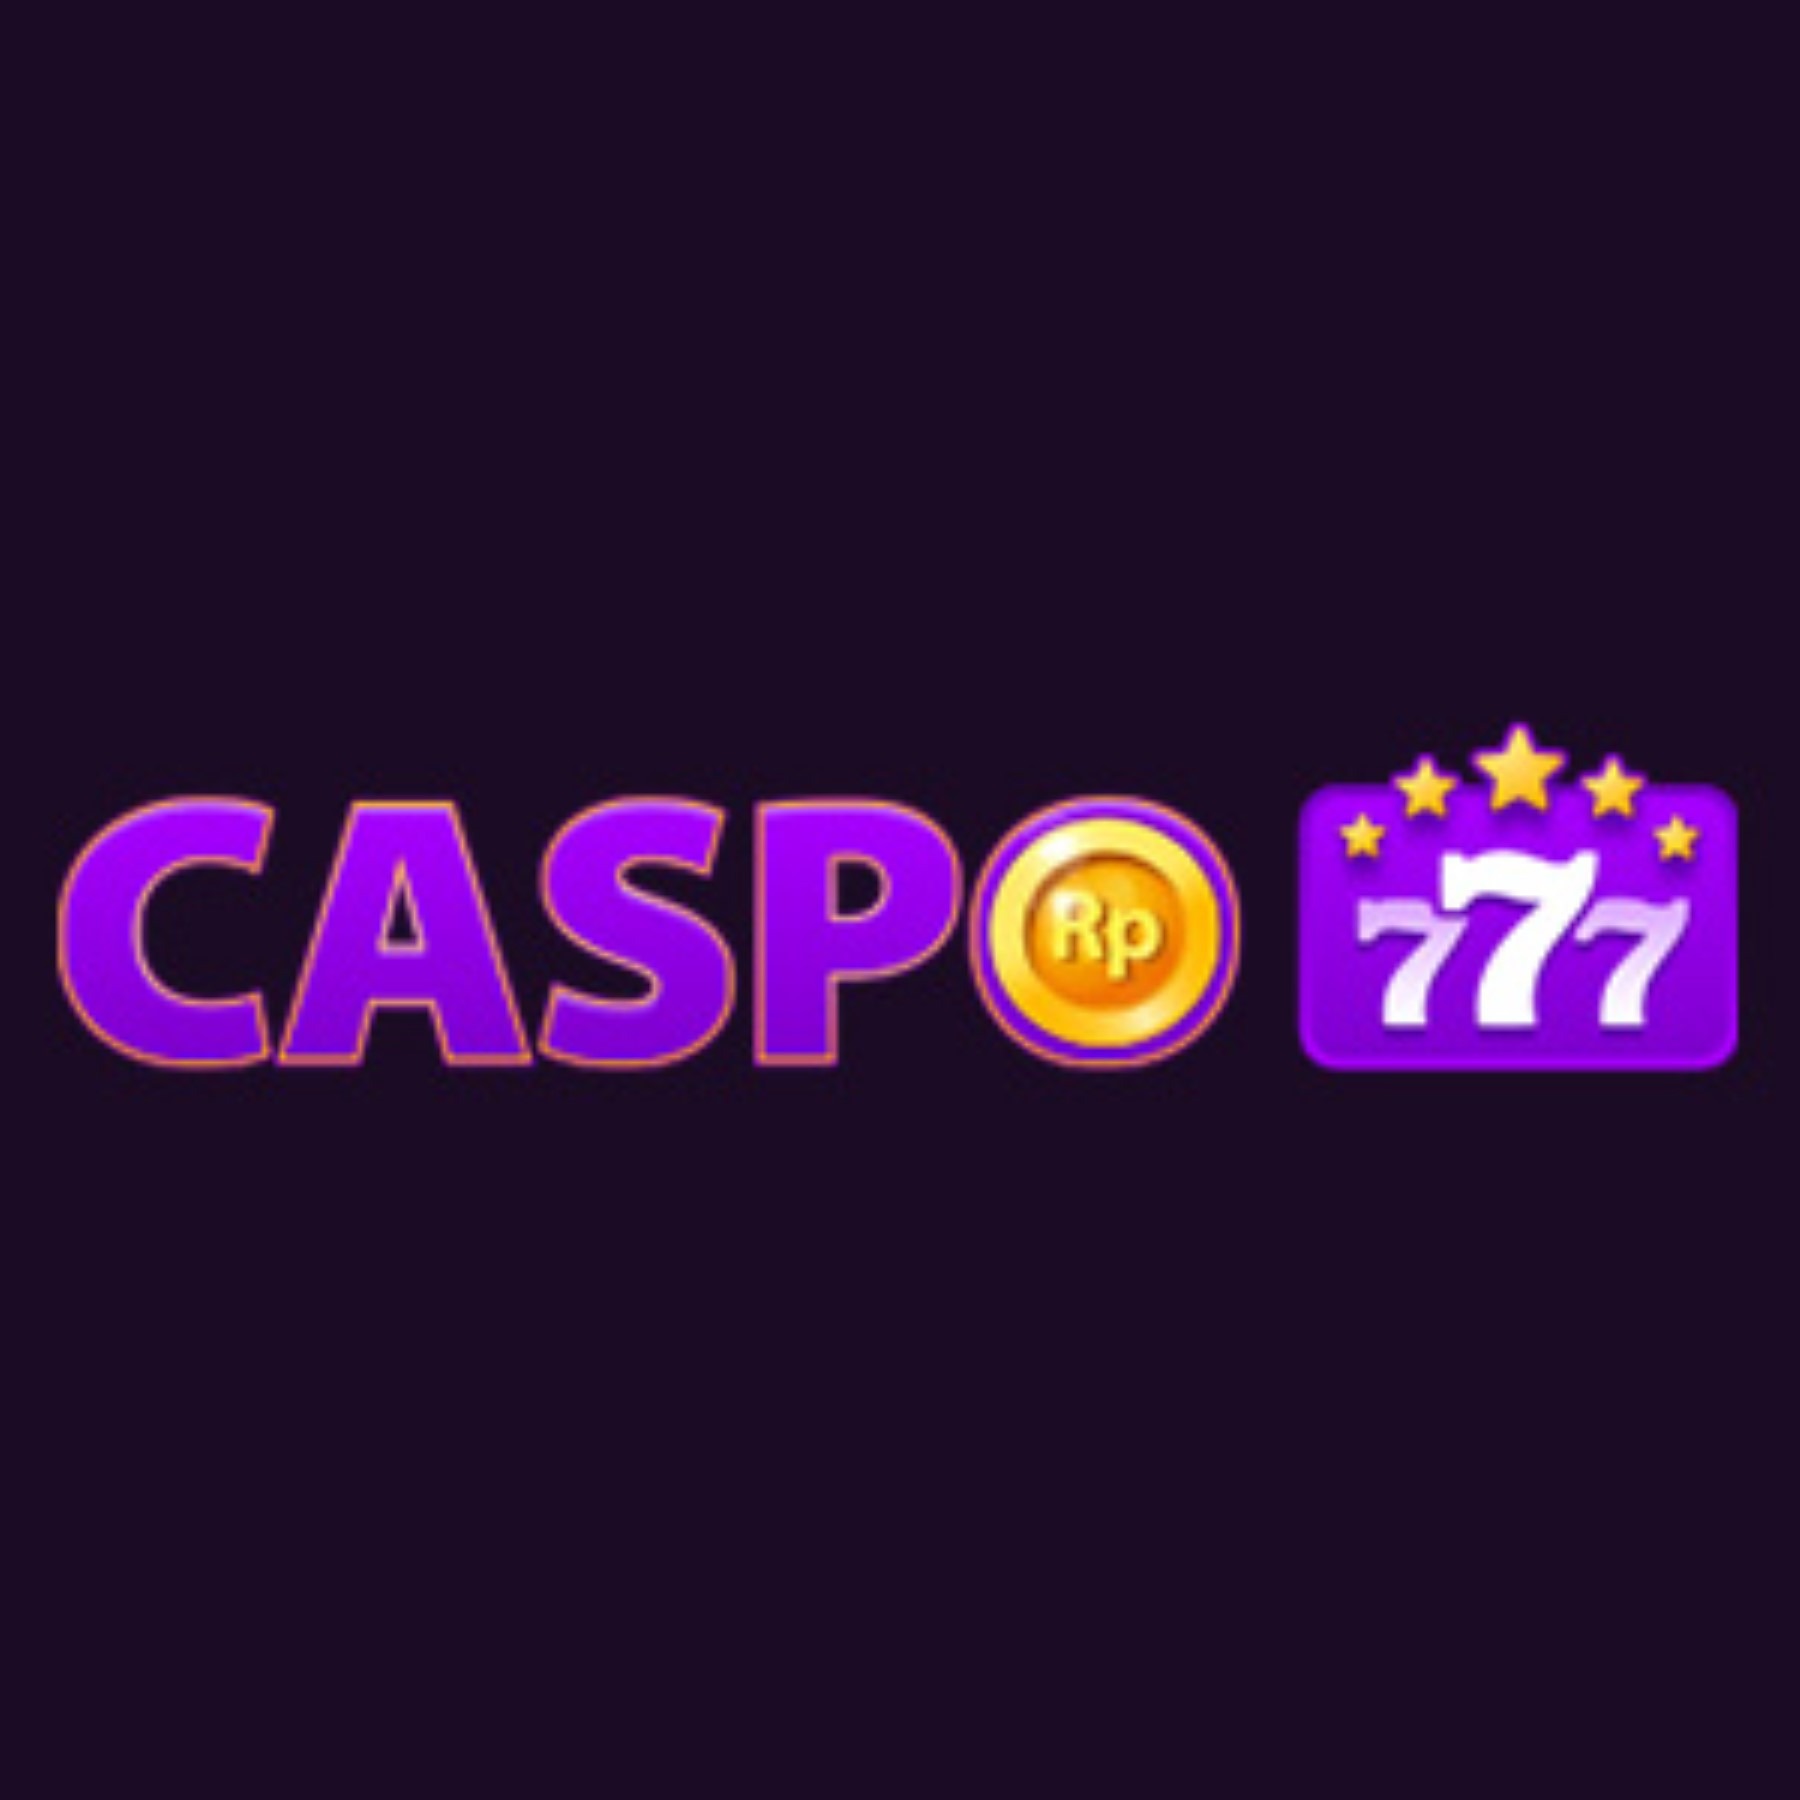 Caspo777 Situs Slot Online Terlengkap Dan Terpercaya 